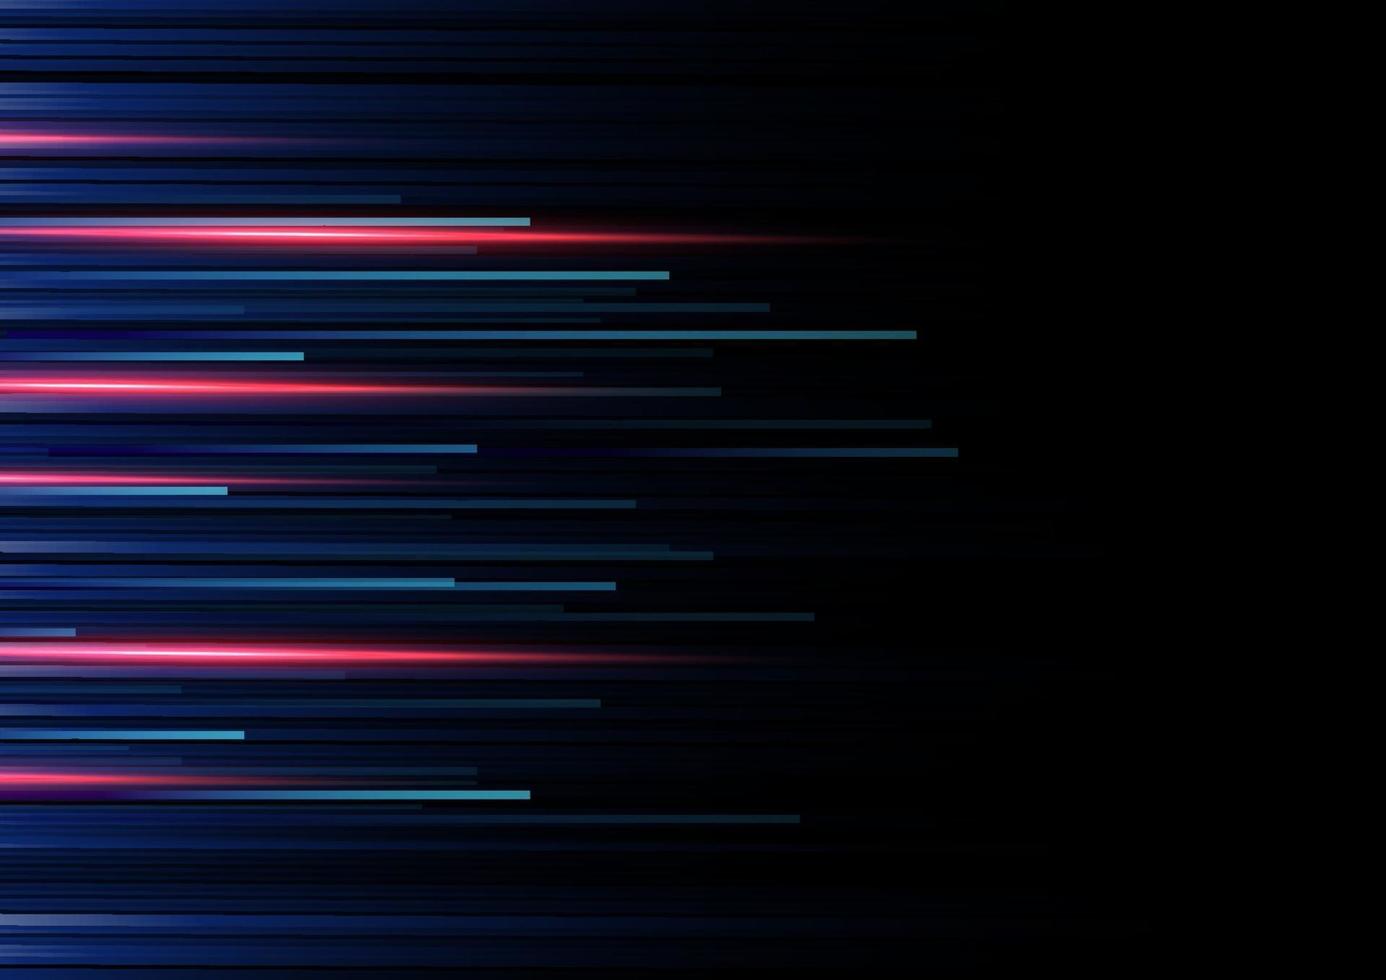 abstraktes rotes und blaues Streifenlinienmuster auf dunkelblauem Hintergrund. Technologiestil. vektor